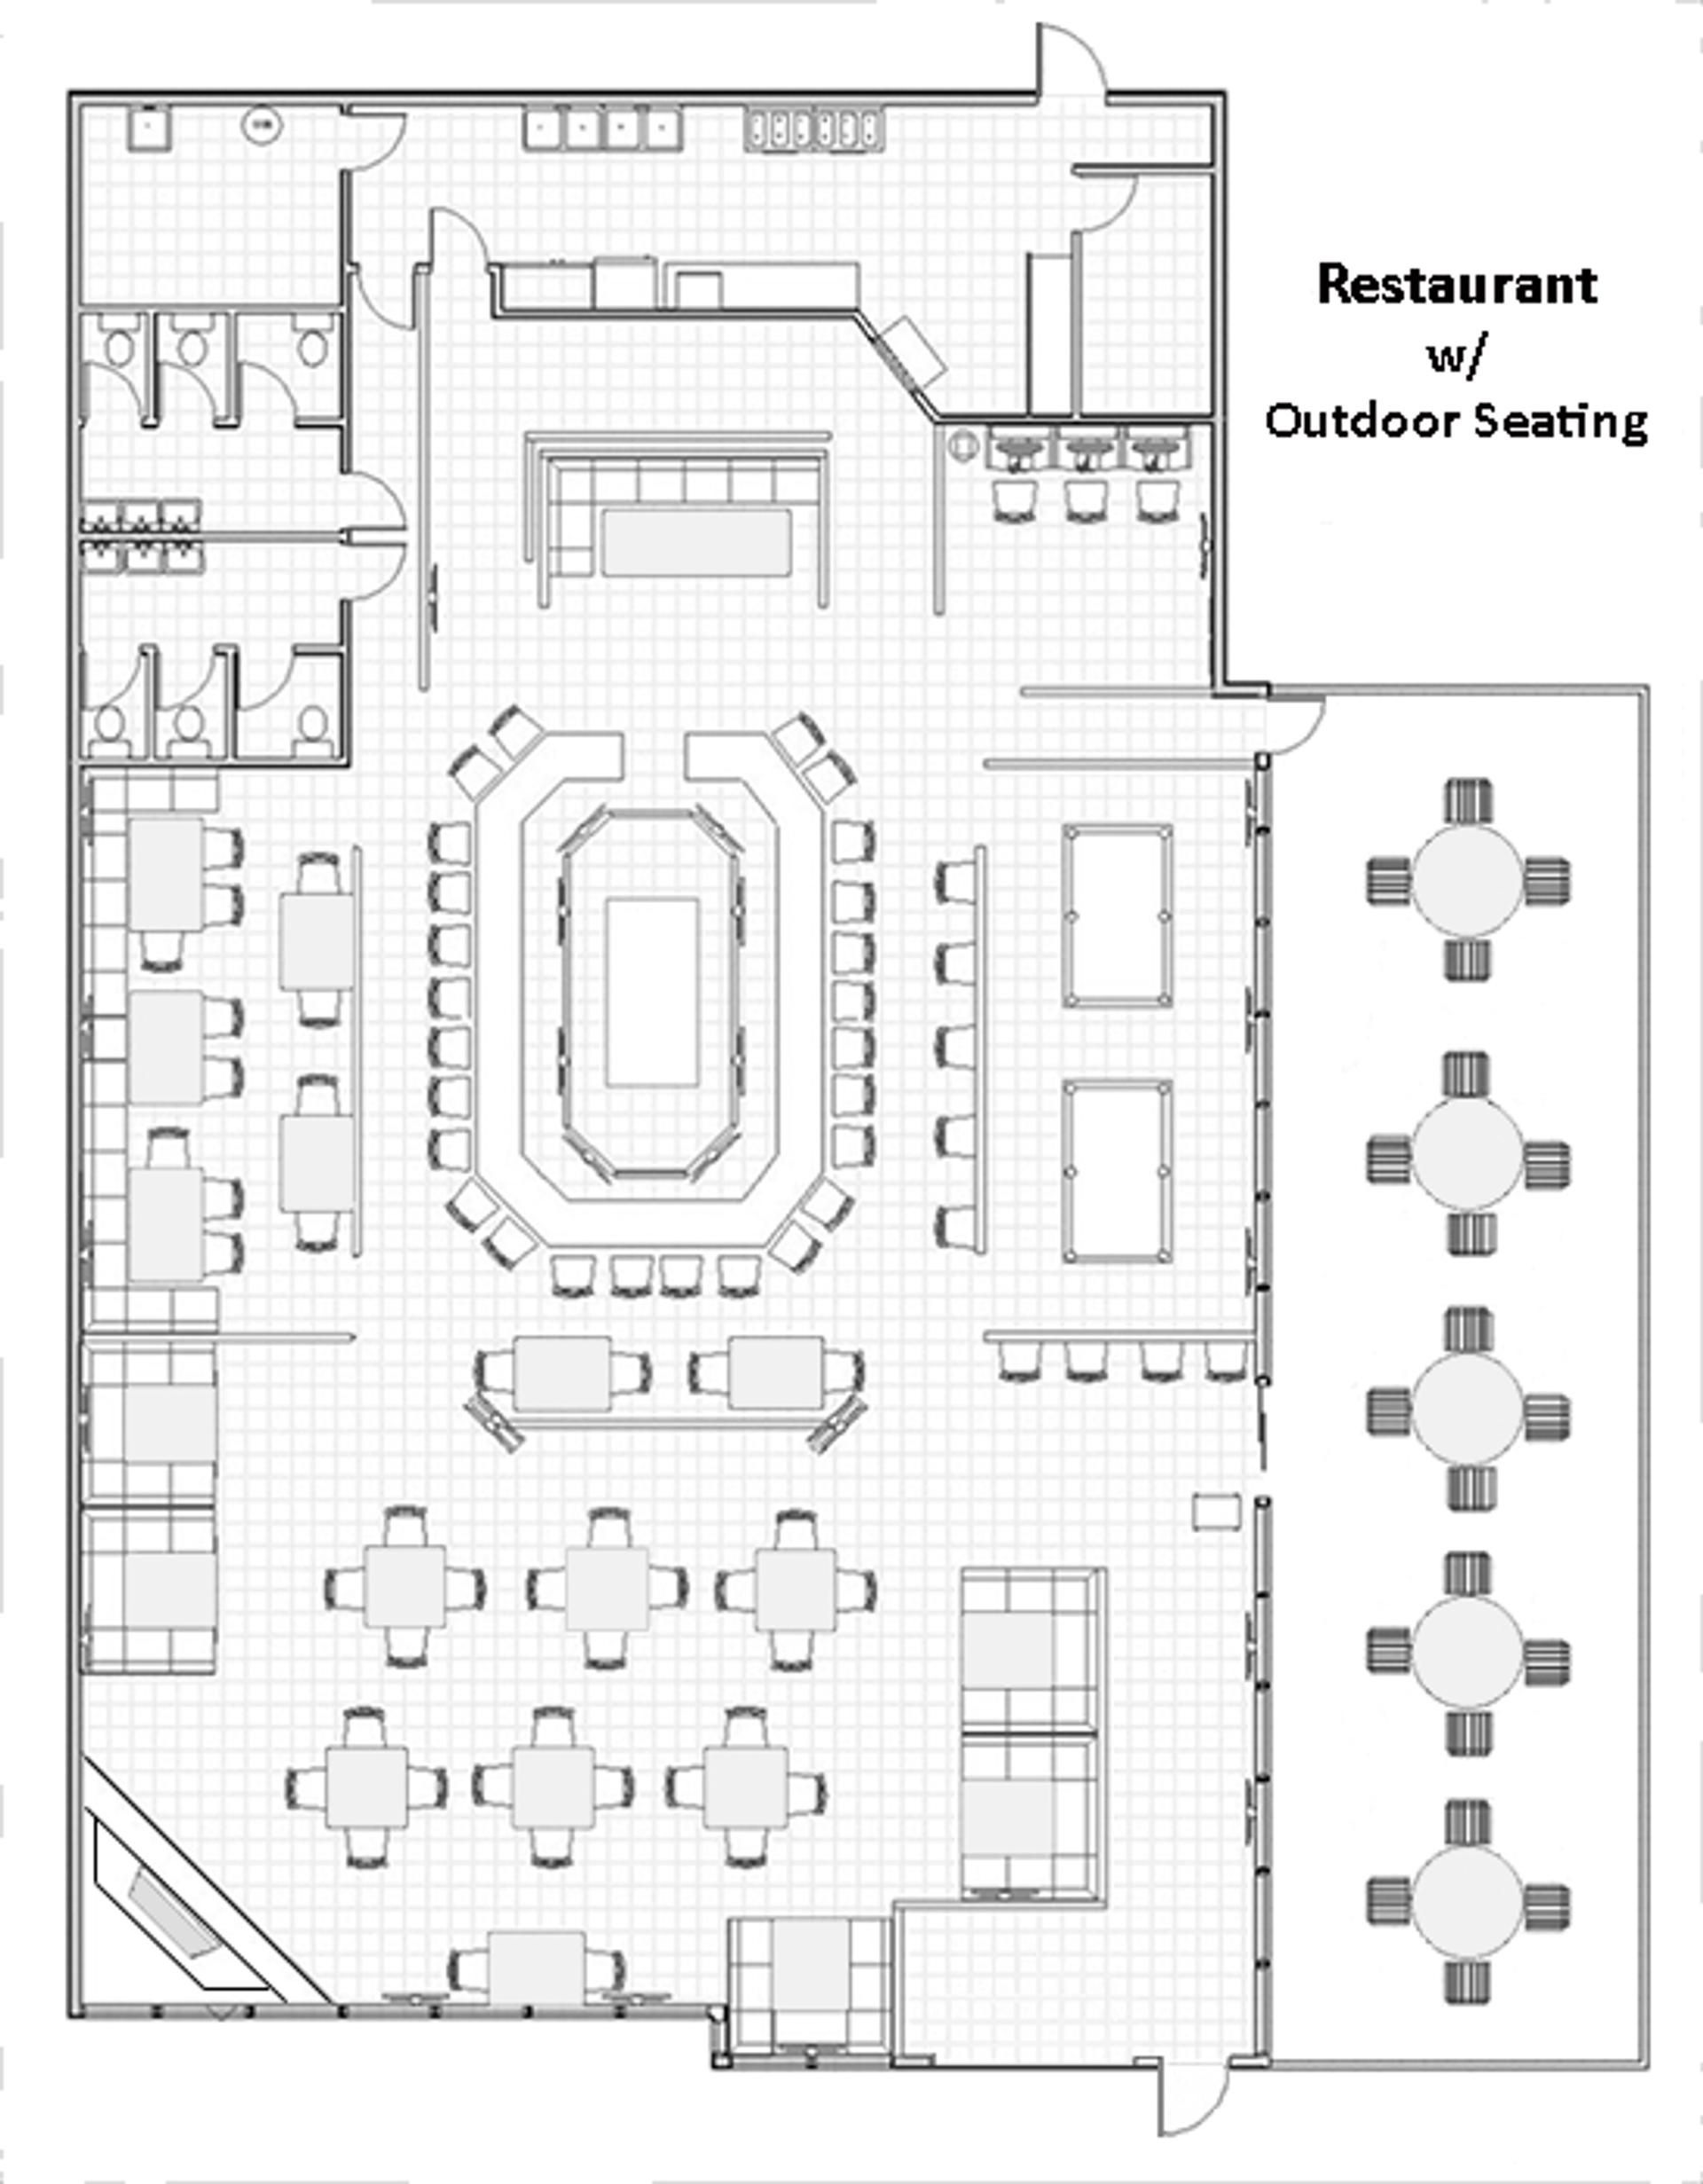 Planlösning för en restaurangs matplats